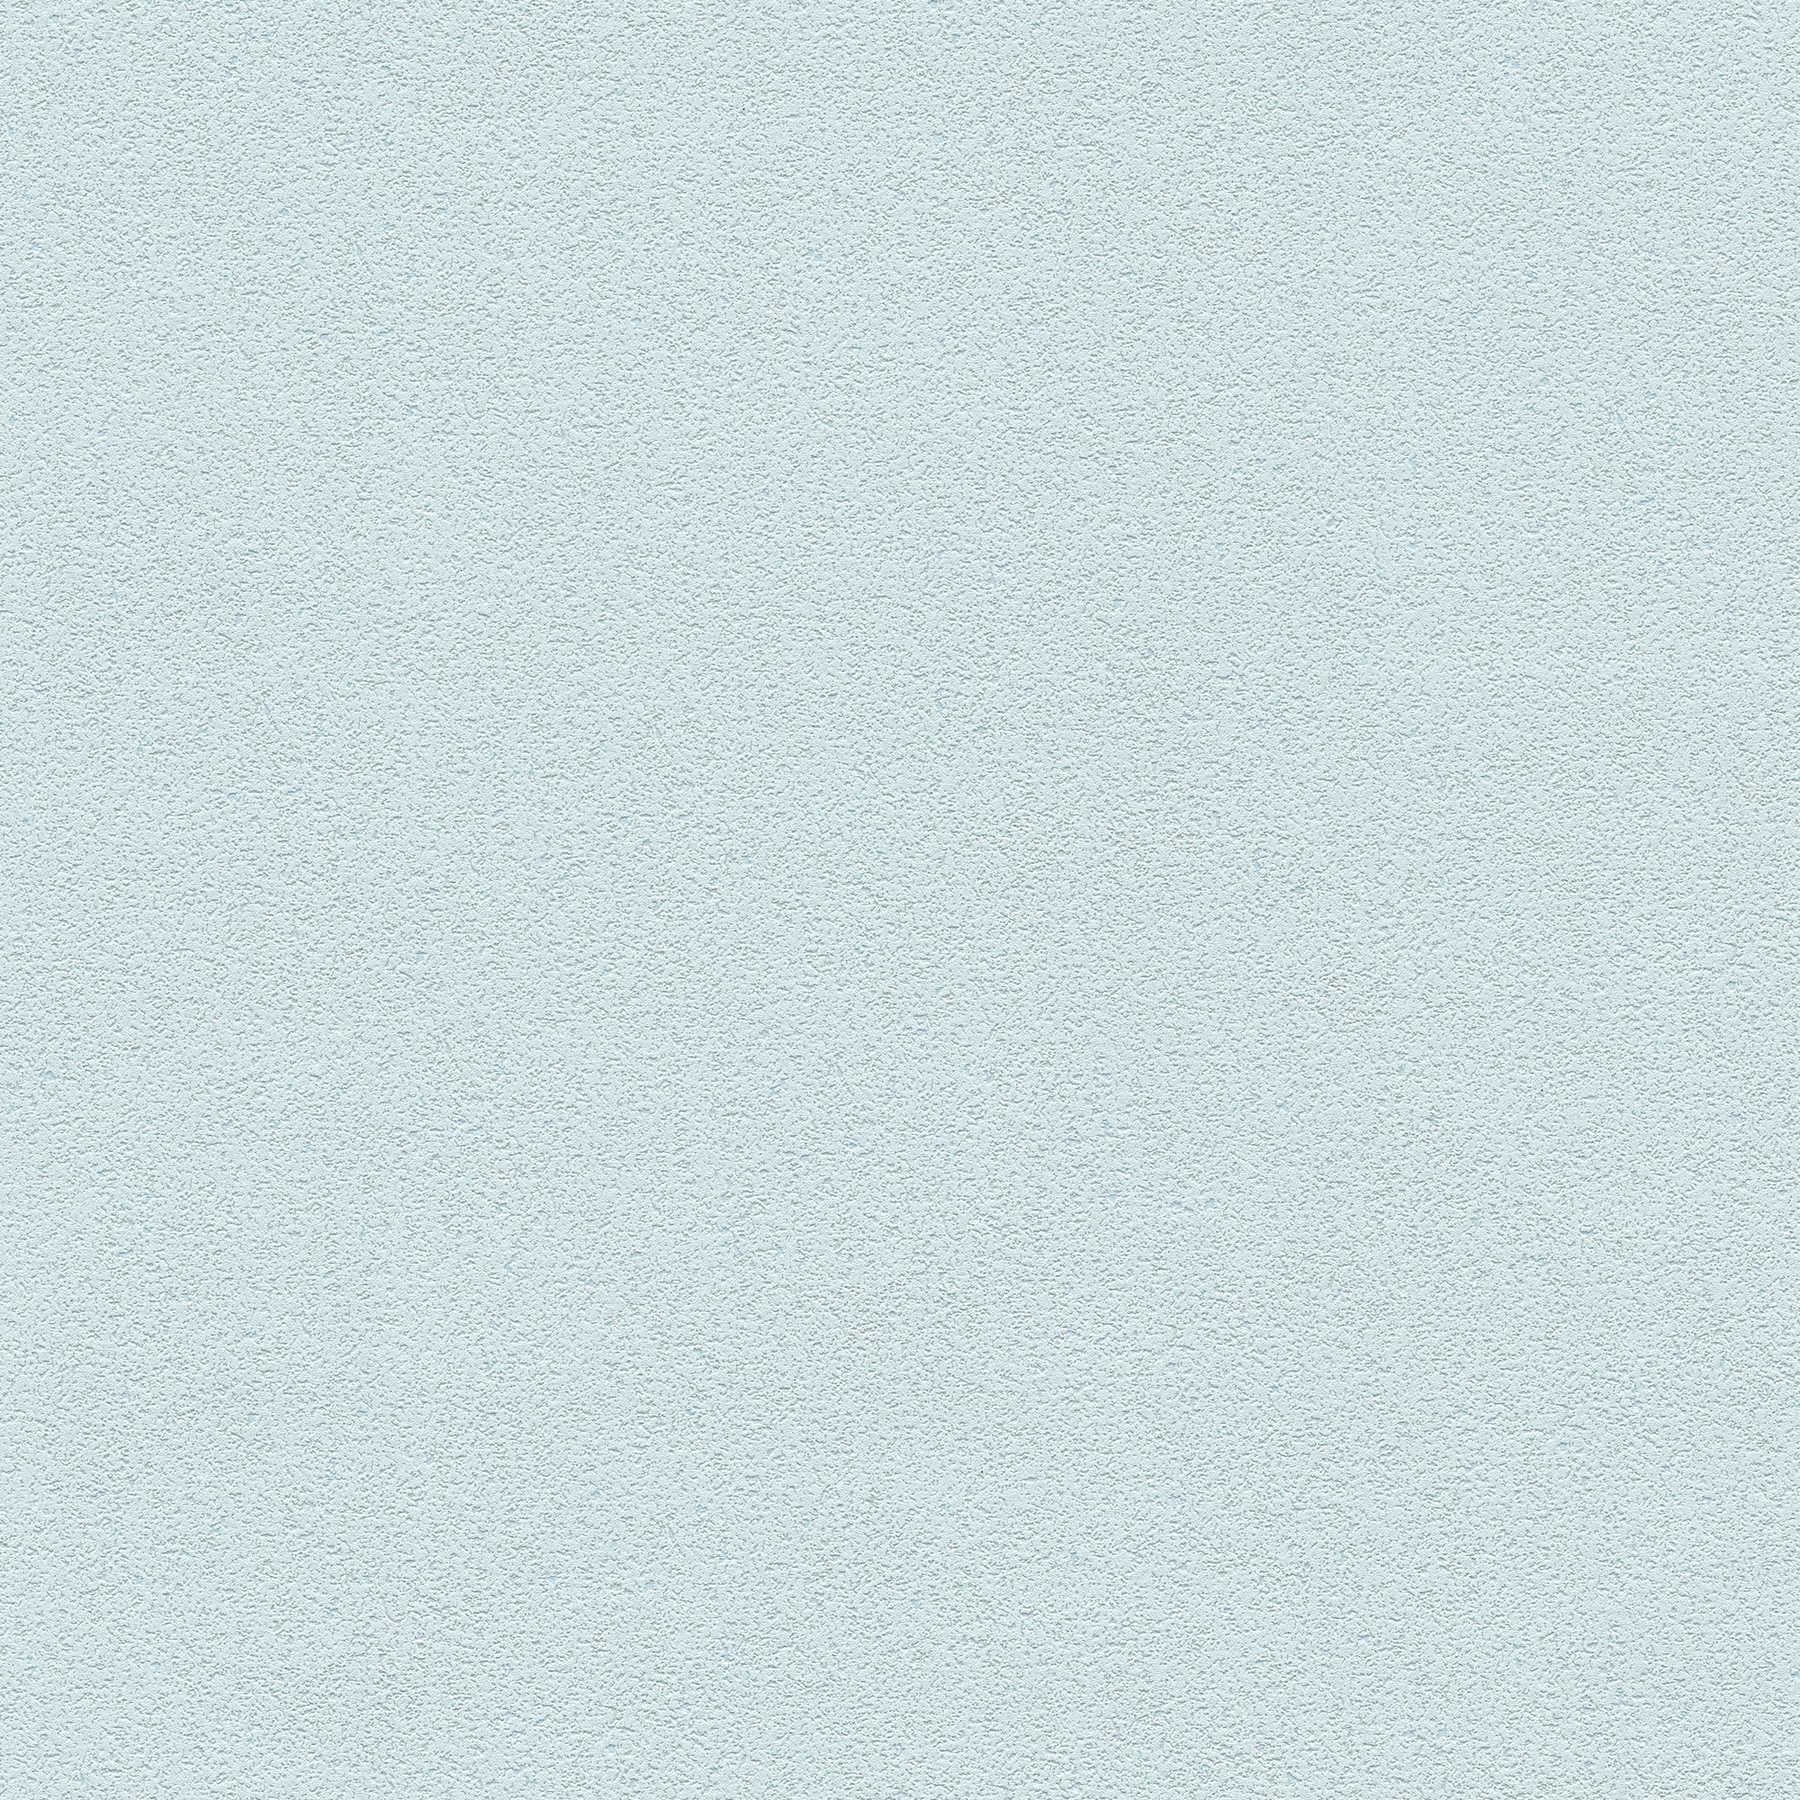 Papier peint uni avec structure de surface fine - bleu
